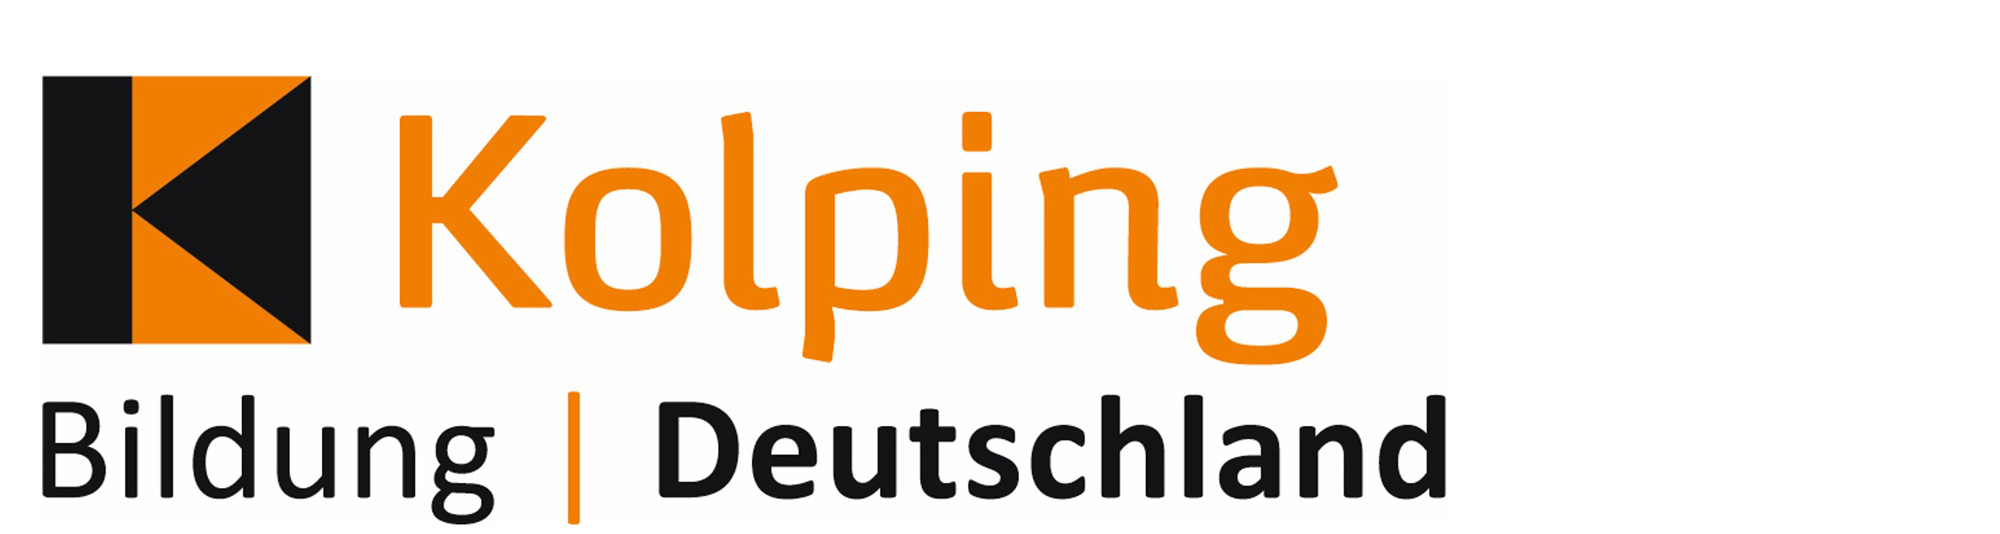 Kolping Bildung Deutschland gGmbH - Pflegeschule Eschweiler